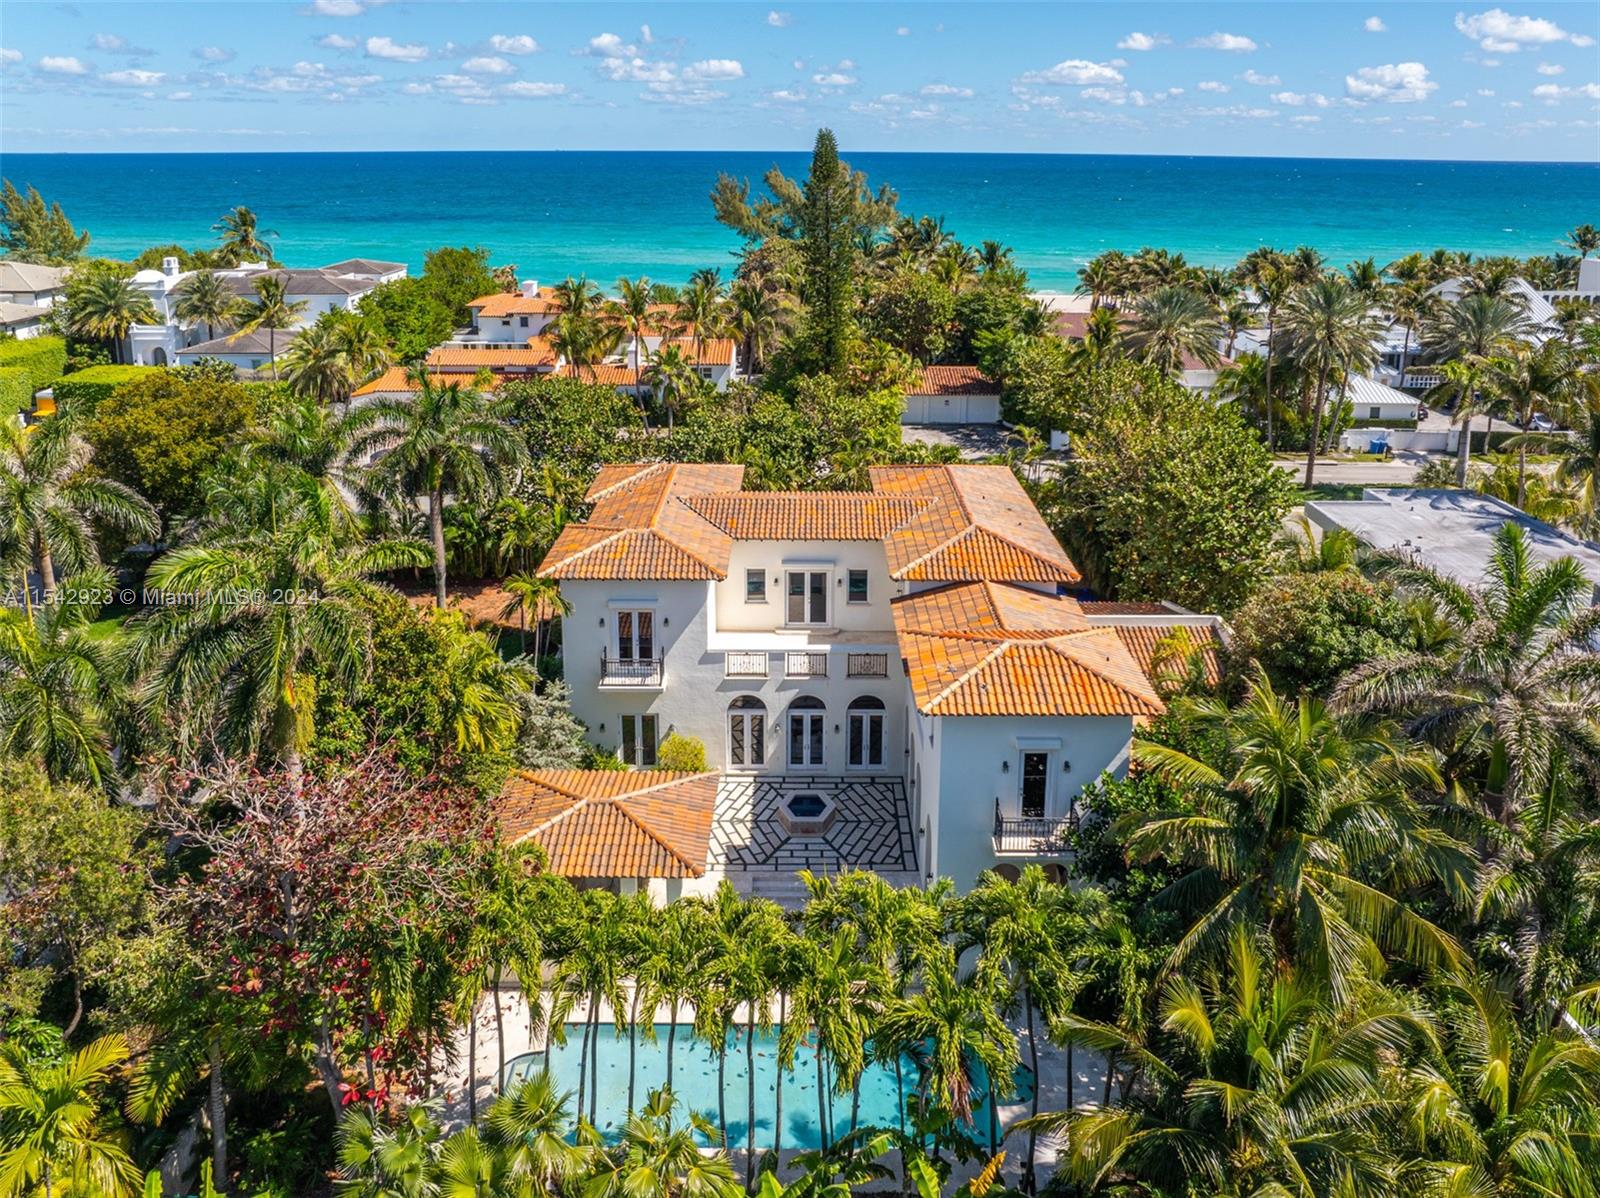 Property for Sale at 296 Ocean Blvd, Golden Beach, Miami-Dade County, Florida - Bedrooms: 6 
Bathrooms: 6  - $8,995,000